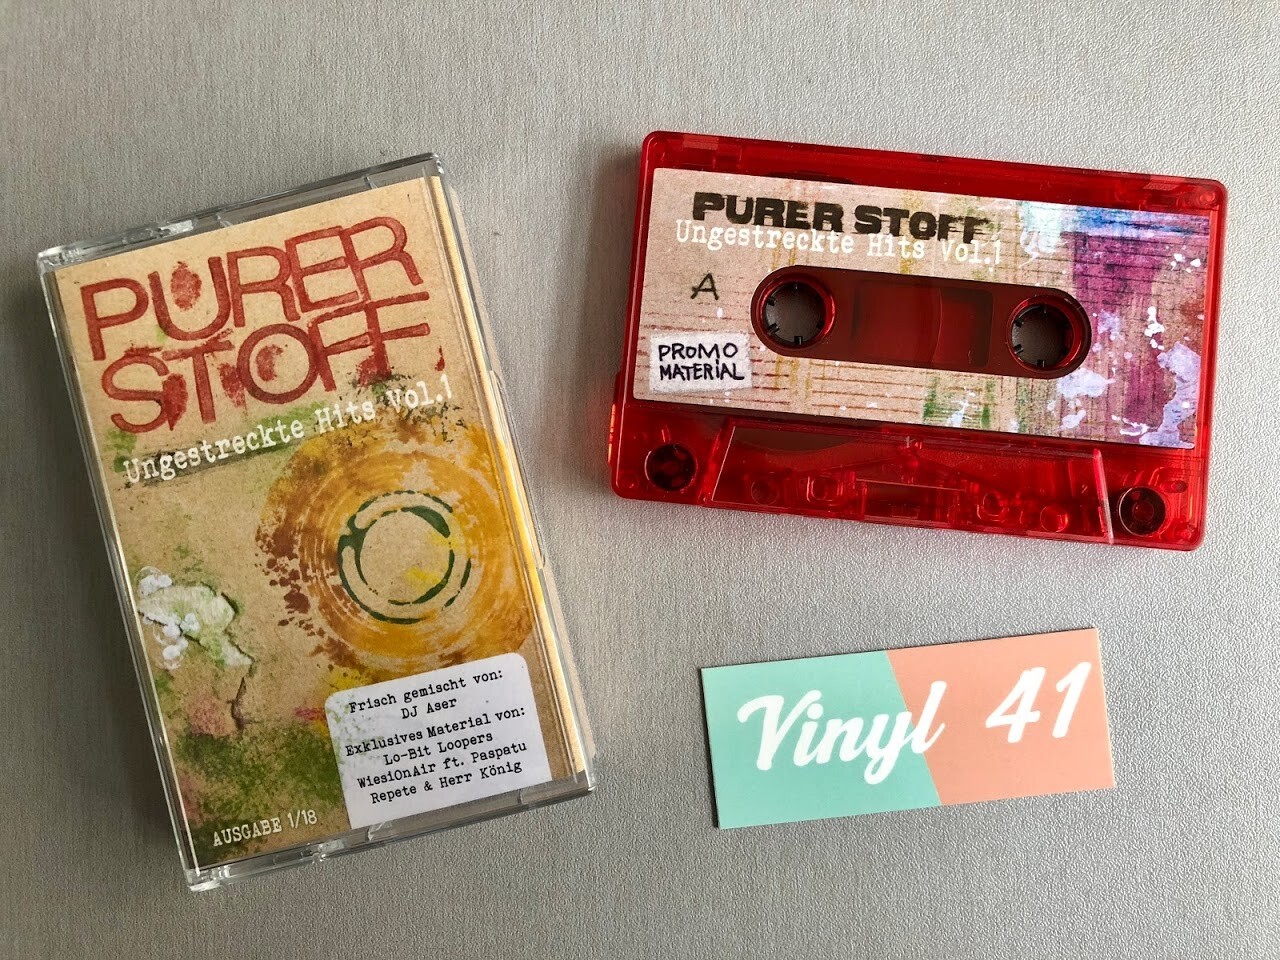 DJ Aser - Purer Stoff - Ungestreckte Hits Vol. 1